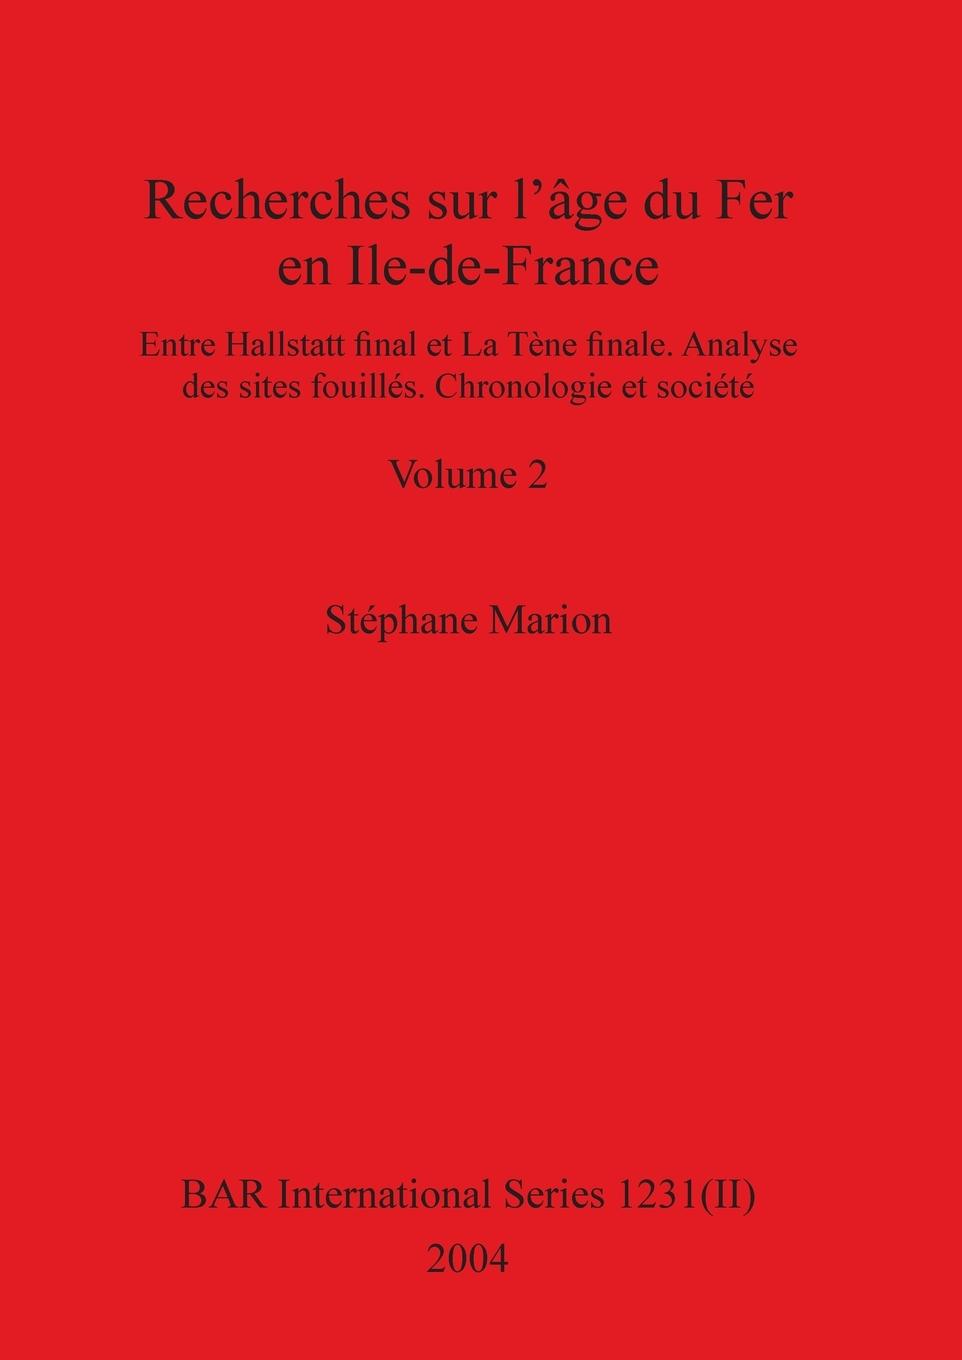 Carte Recherches sur l'age du Fer en Ile-de-France, Volume II Marion Stephane Marion